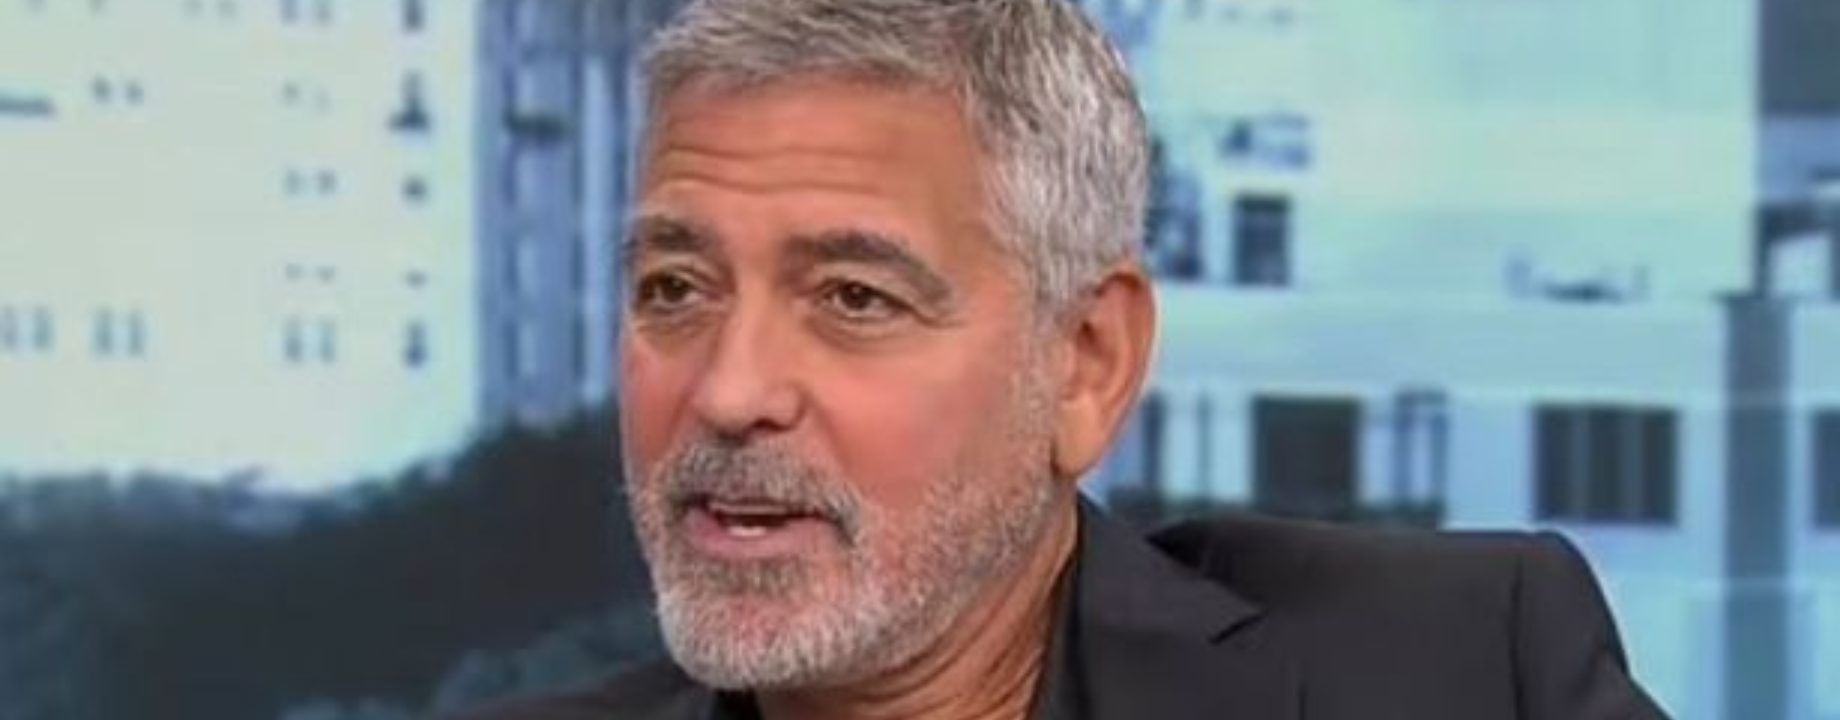 1 George Clooney